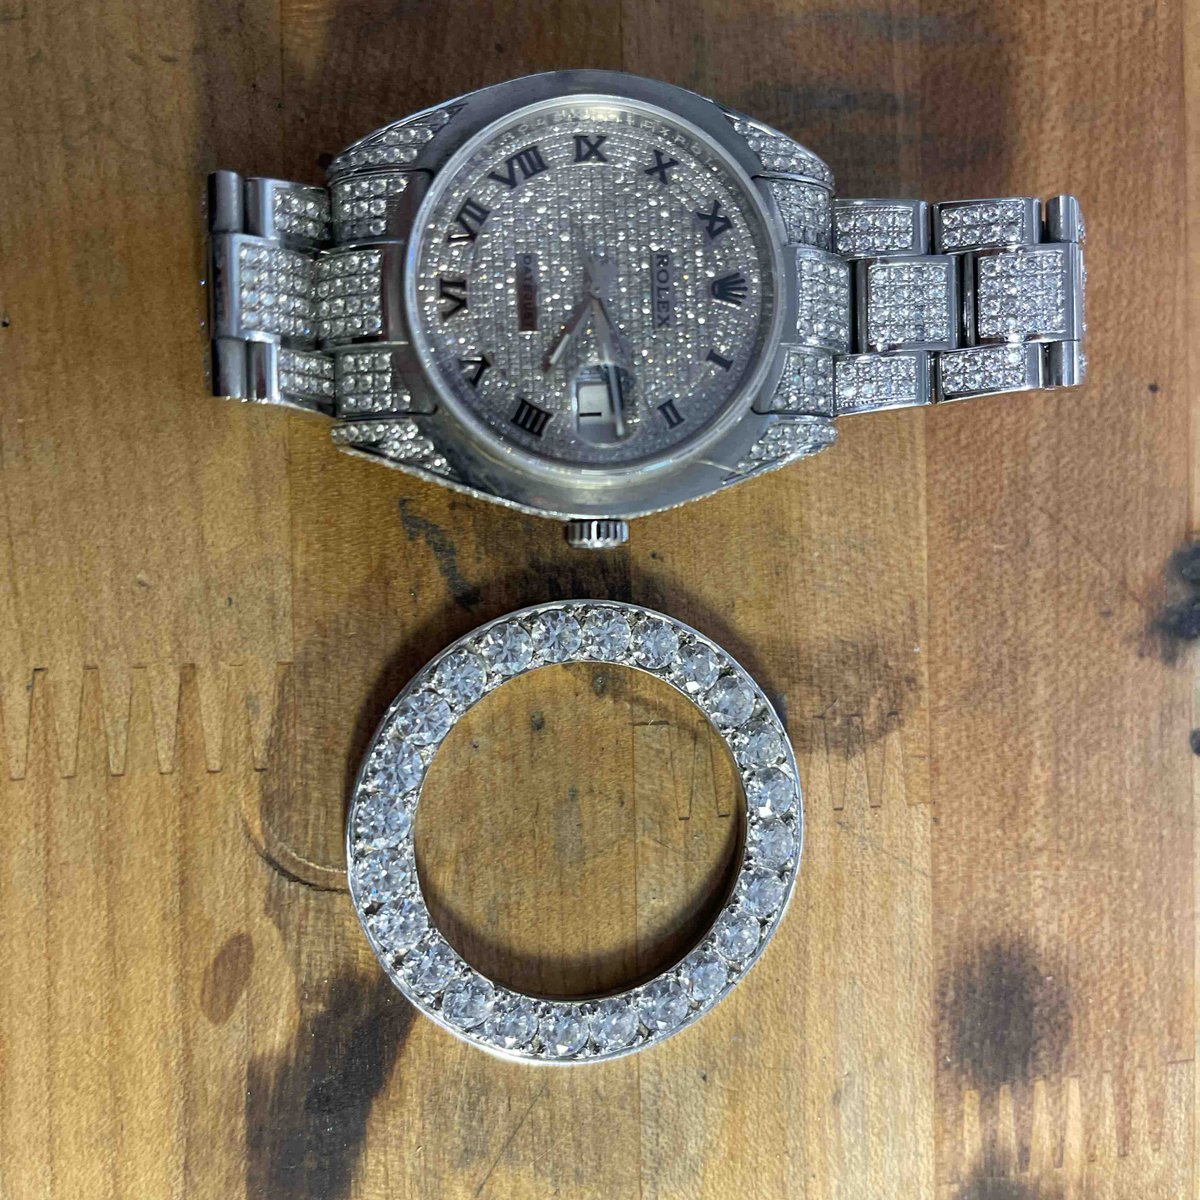 Bigger  is always better.  New custom diamond bezel for this special timepiece. 
-
-
-
#regardjewelry #austinscoolestjeweler #therootoflove #timepiece #watches #watchesofaustin #watchlovers #watchrepairofaustin #watchservicing #austintexas